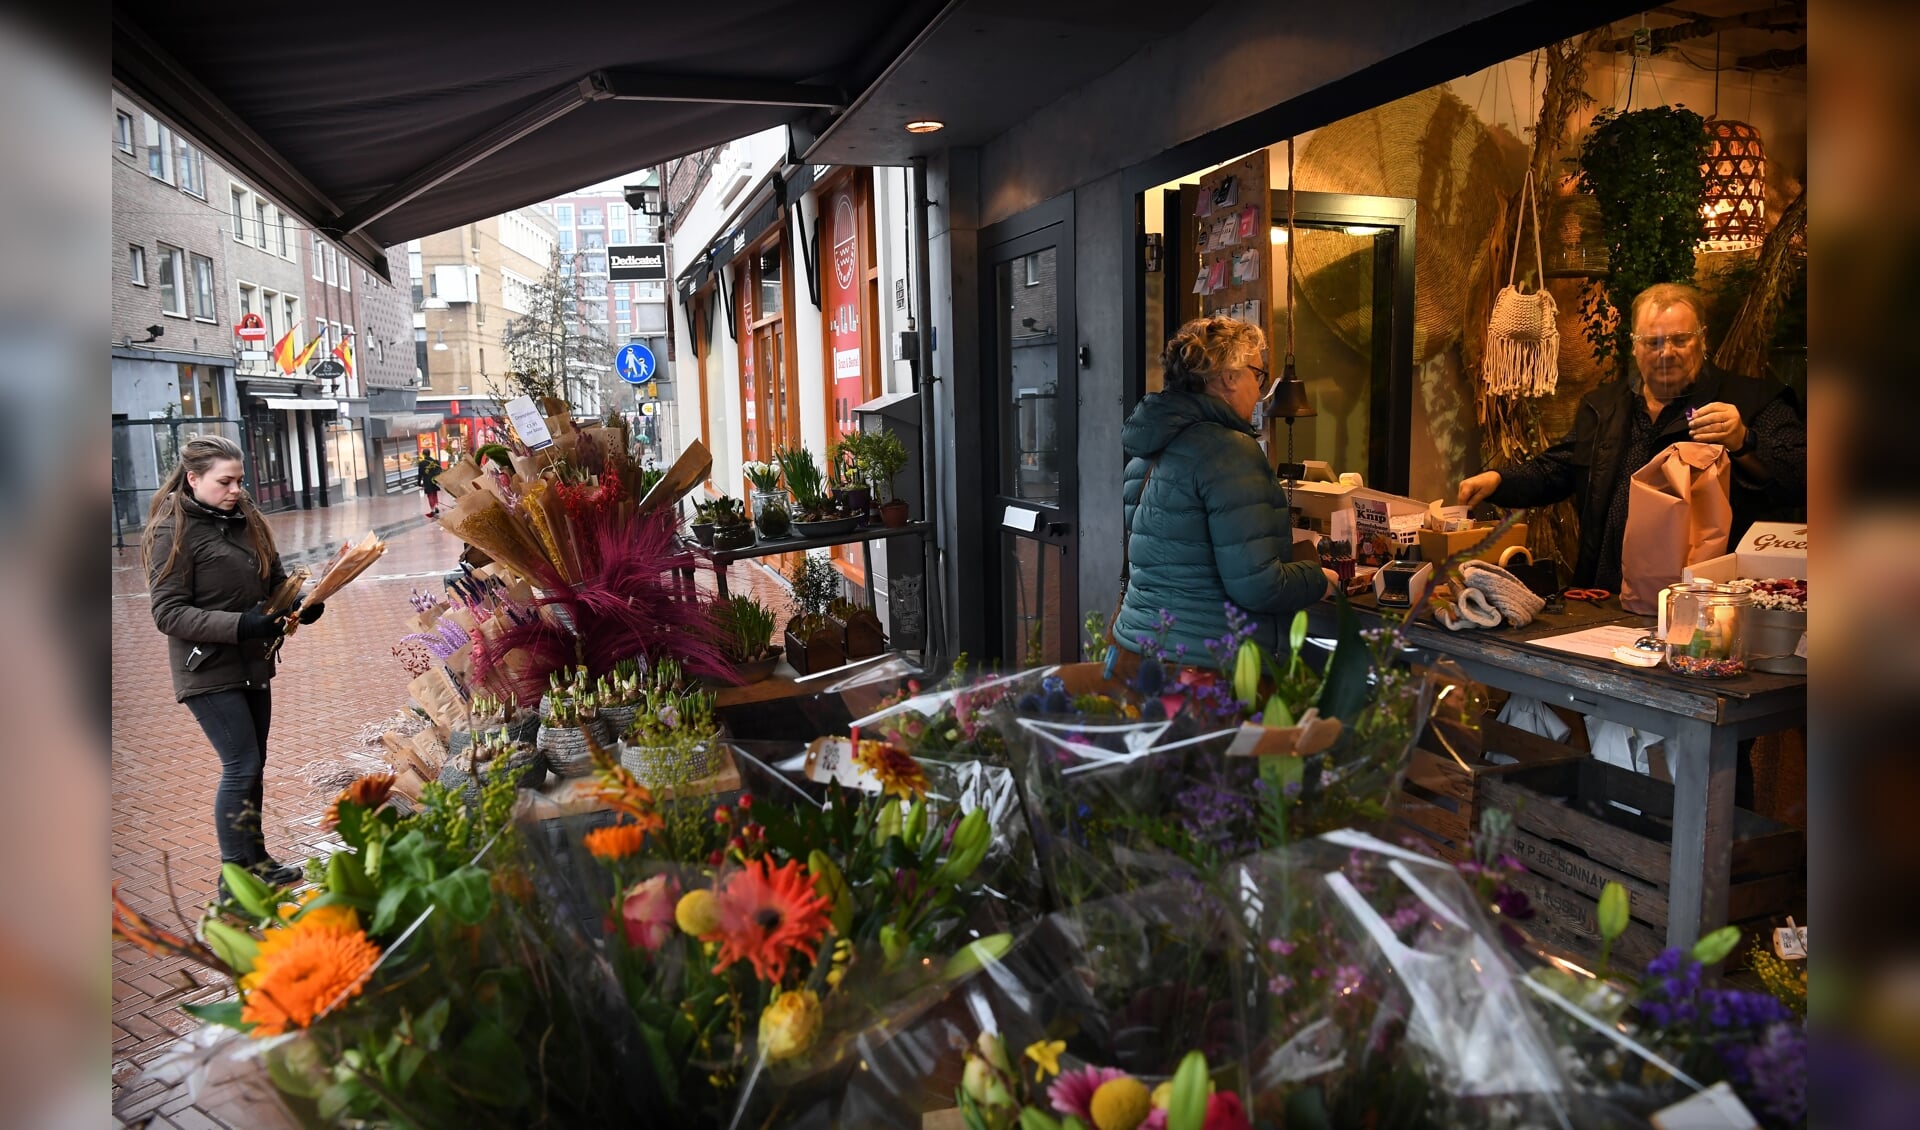 De bloemenwinkel mag aan de straat verkopen; vanuit de ingang van de winkel.